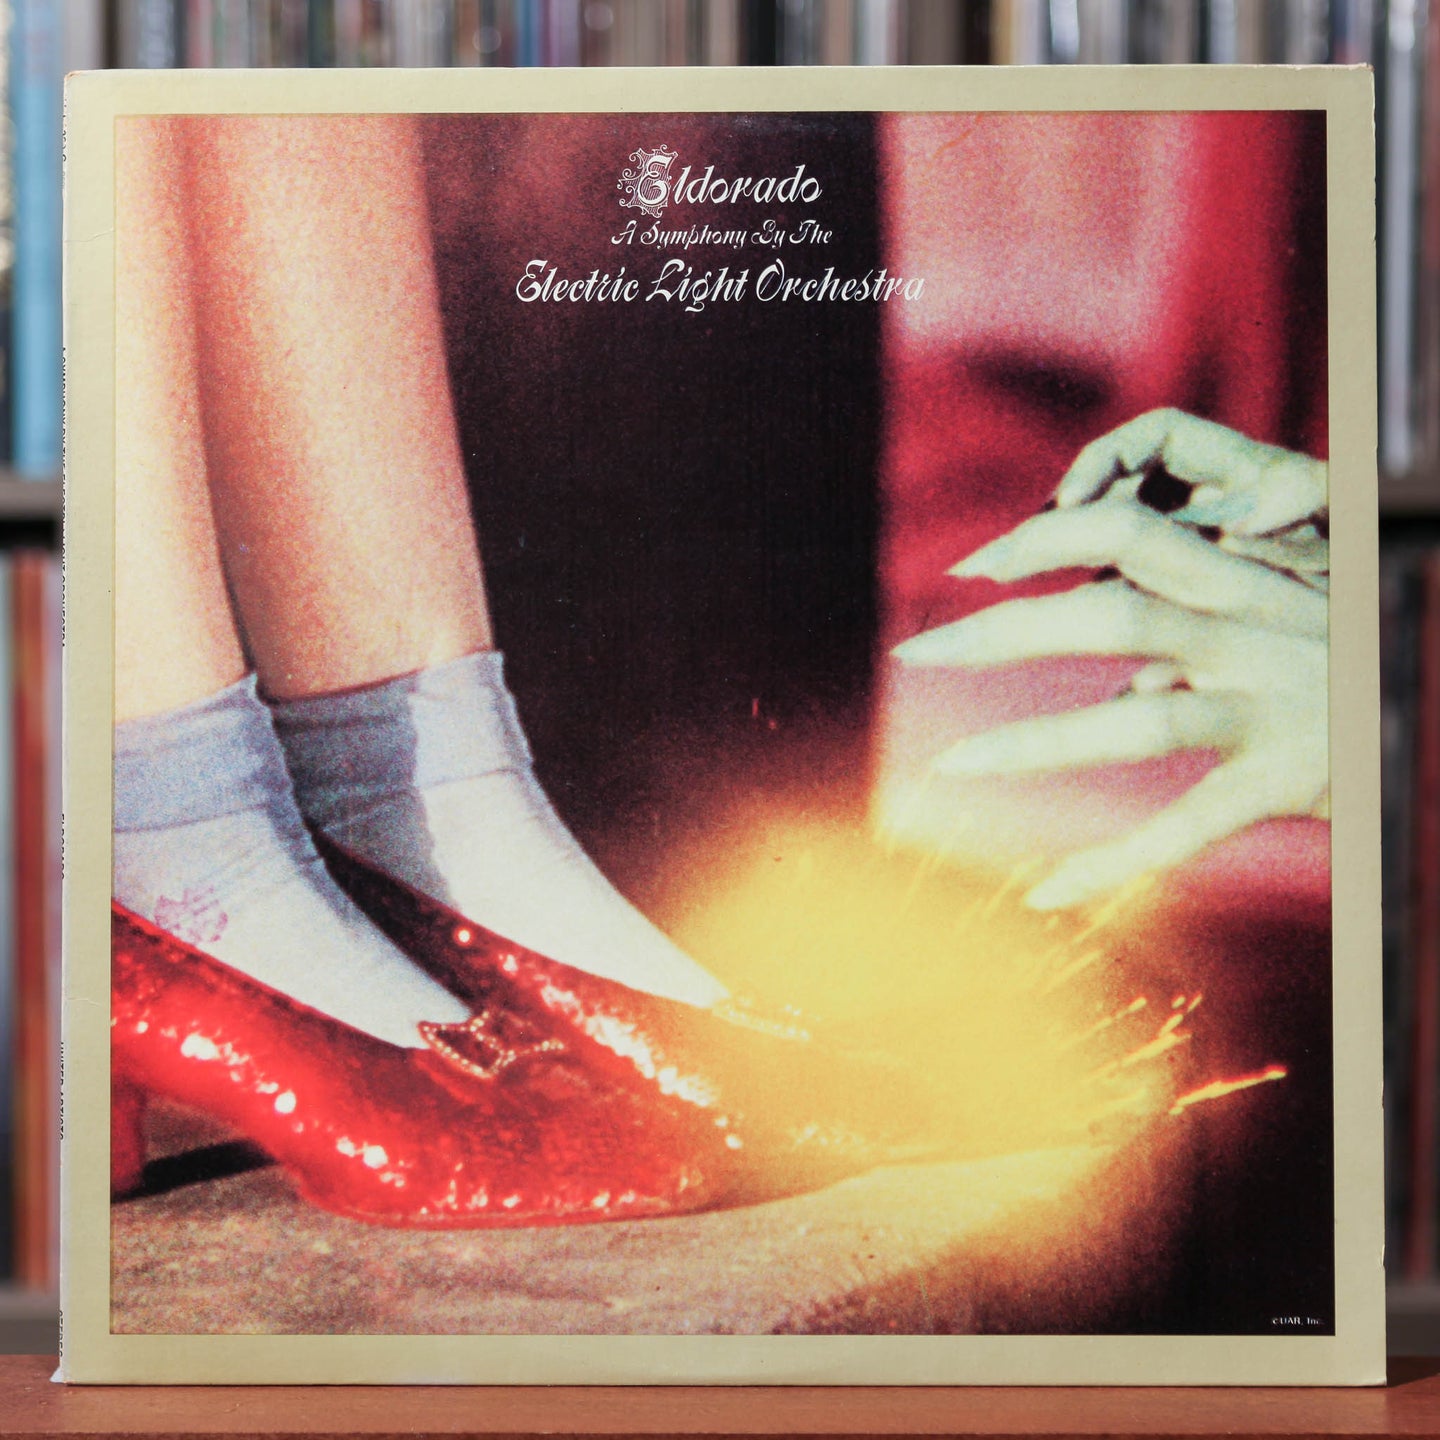 ELO - Eldorado - A Symphony By The Electric Light Orchestra - 1974 UA, VG+/VG+